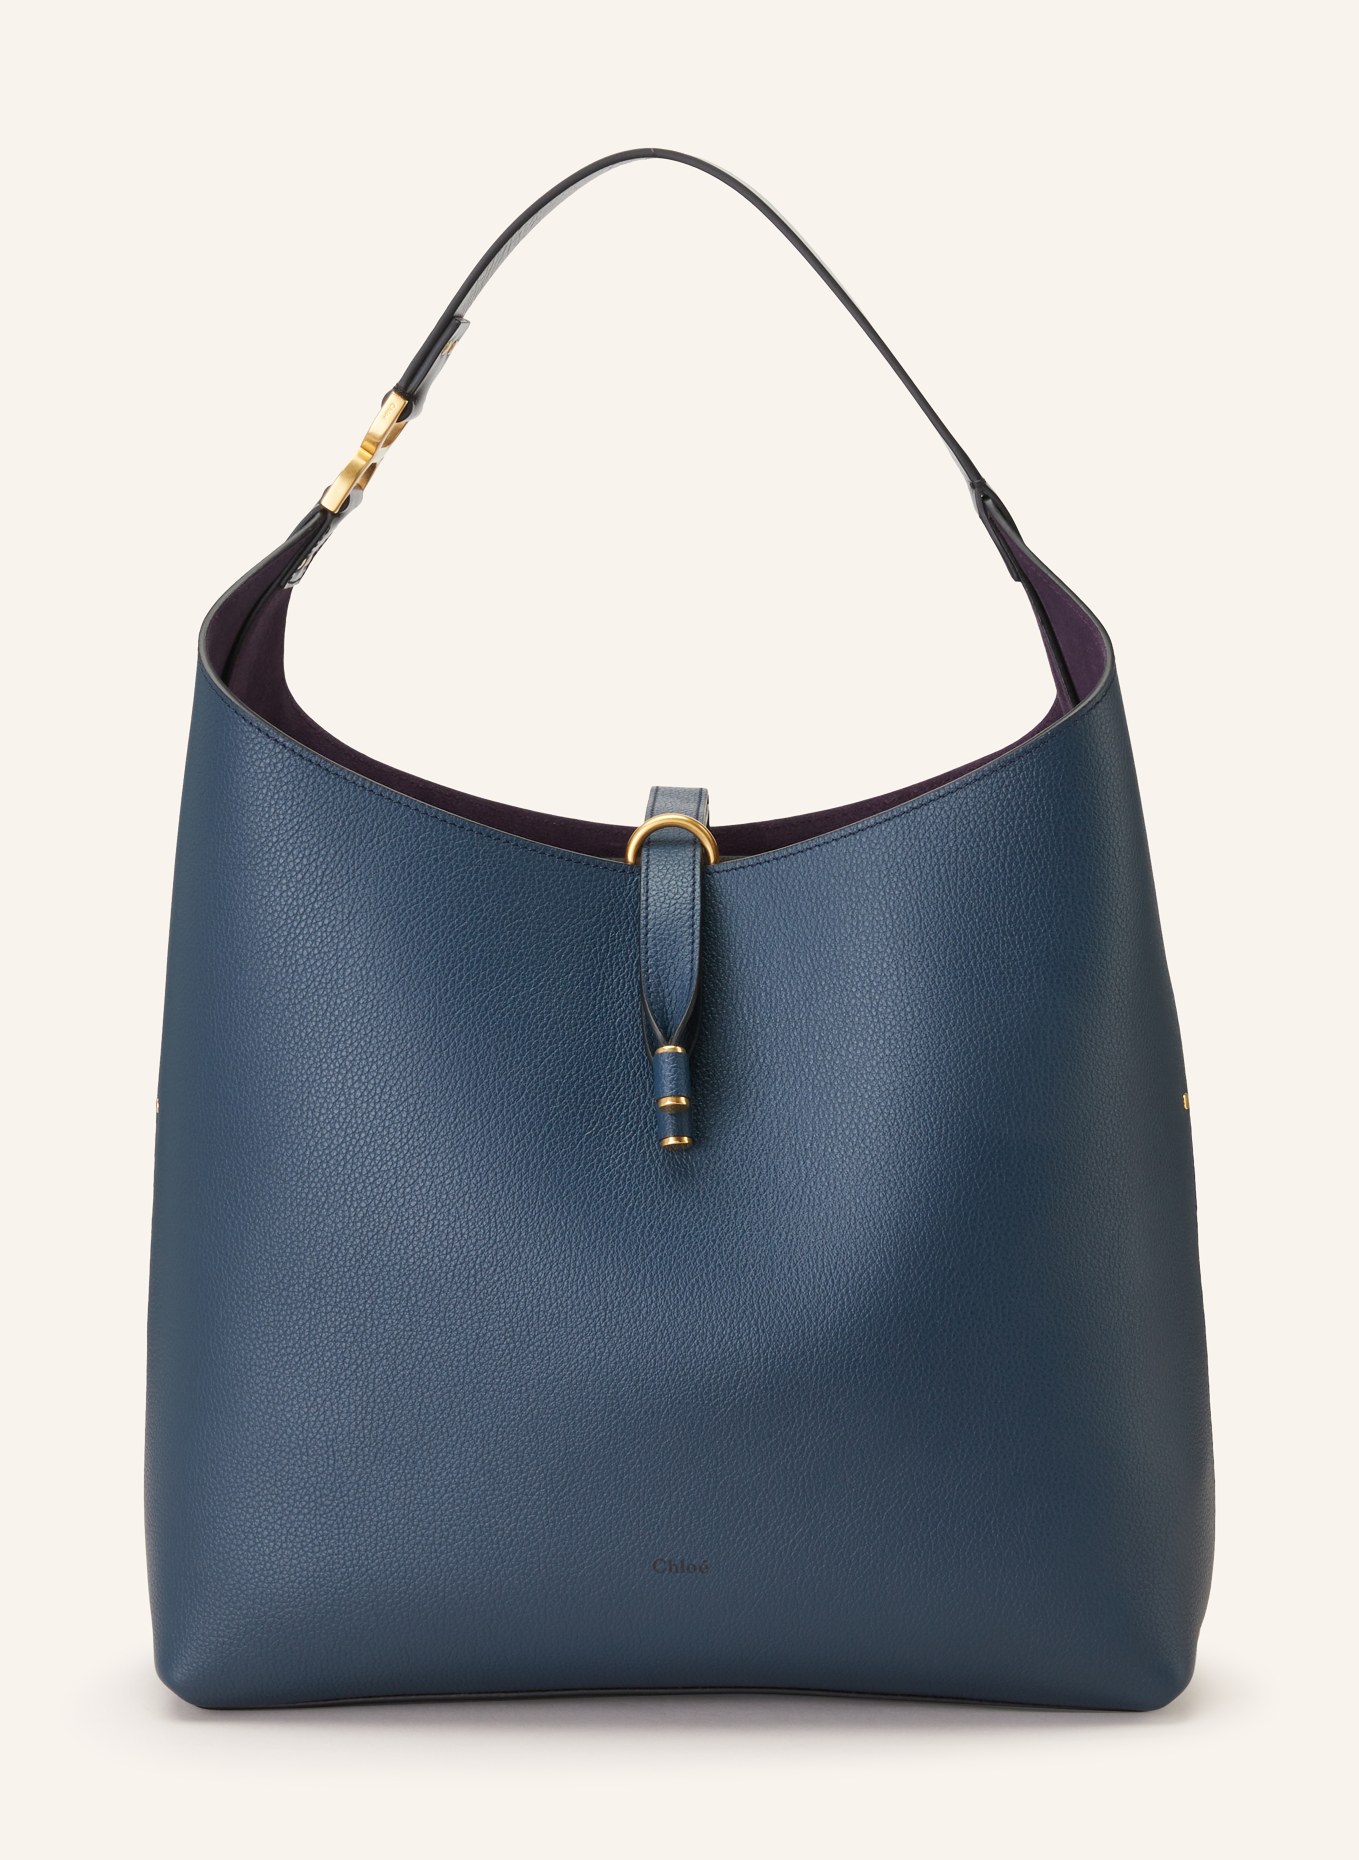 Chloé Hobo-Bag MARCIE, Farbe: NAVY (Bild 1)